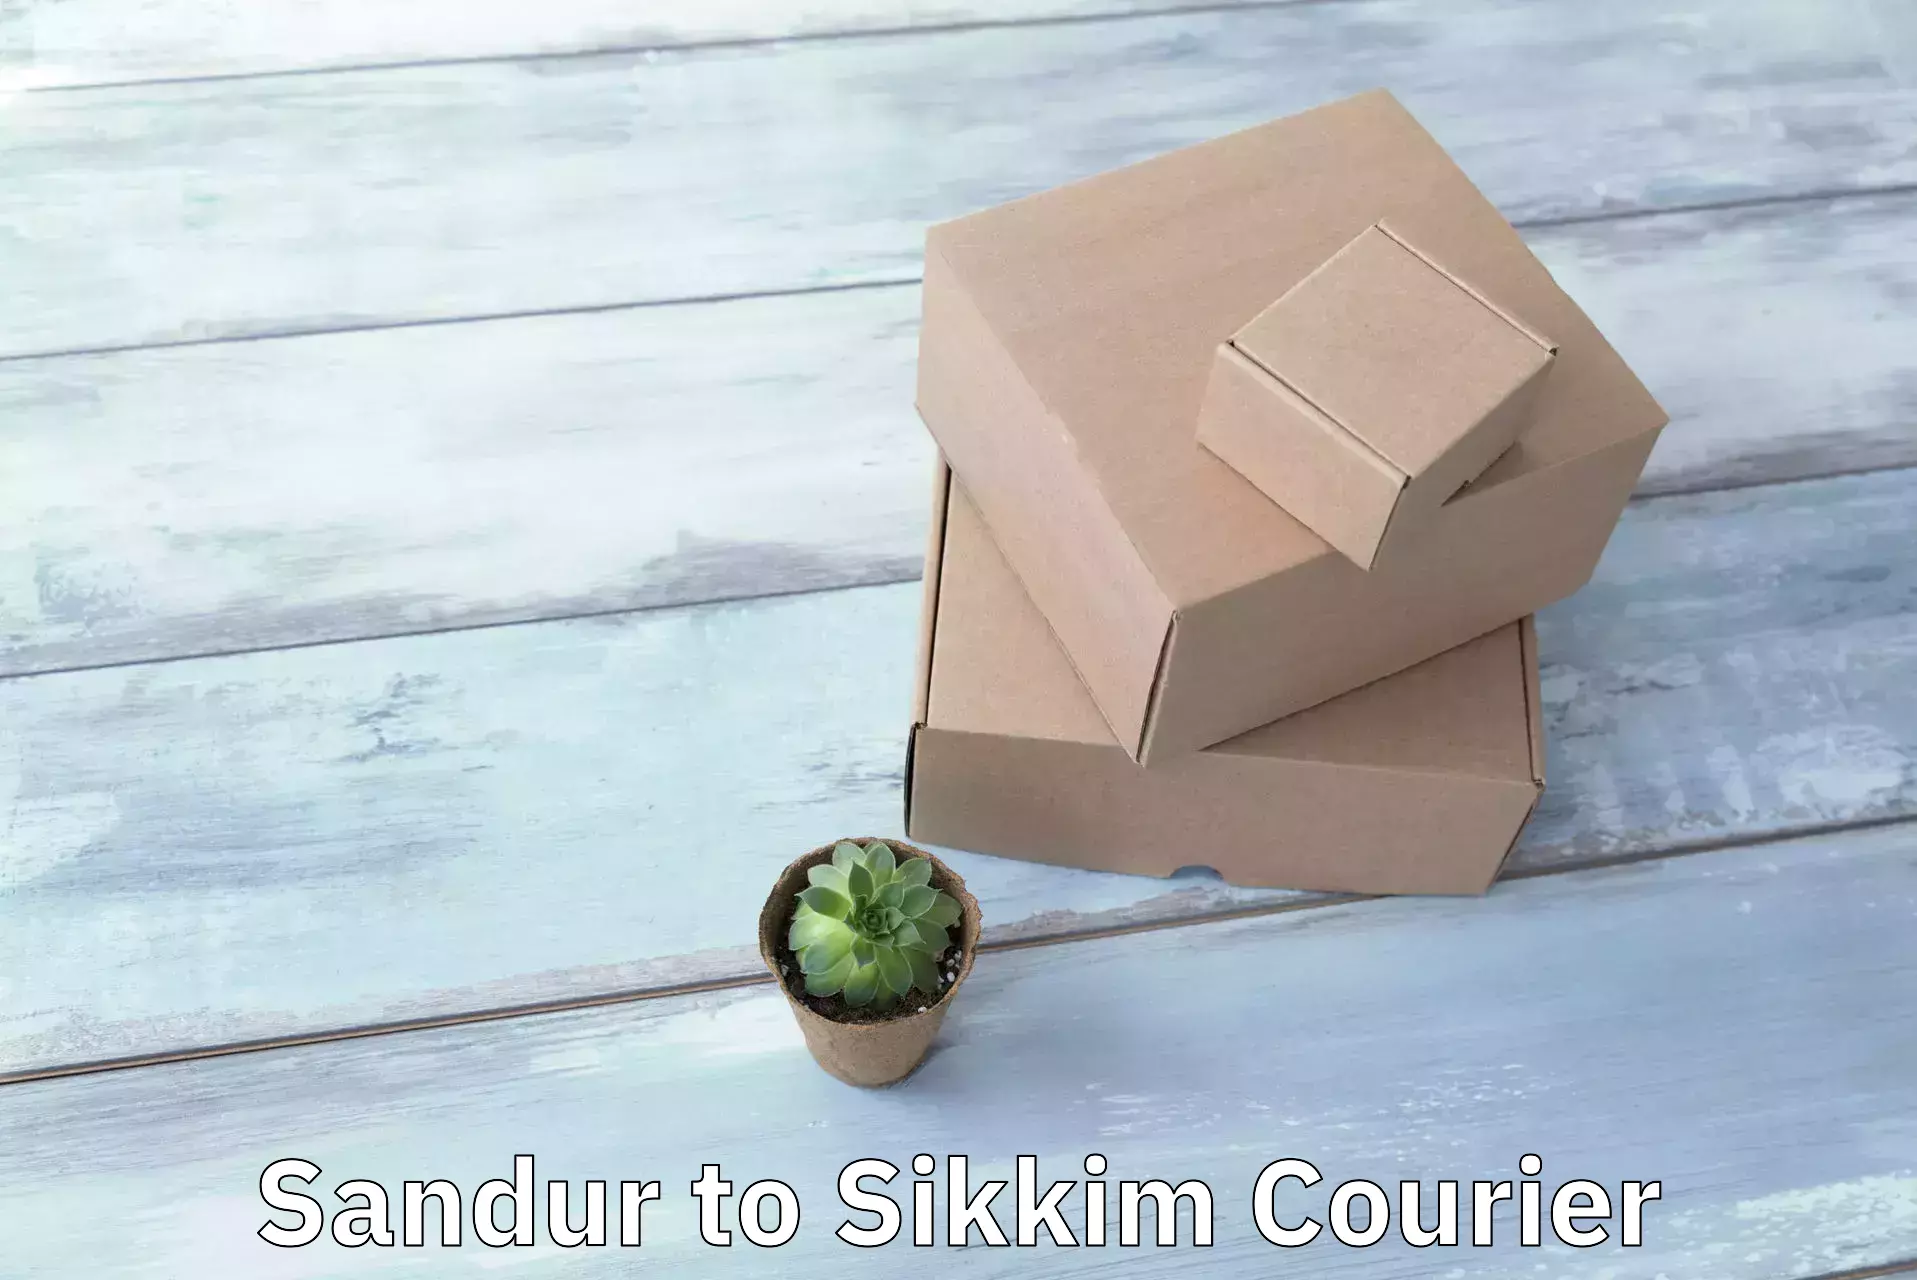 Efficient freight service Sandur to Sikkim